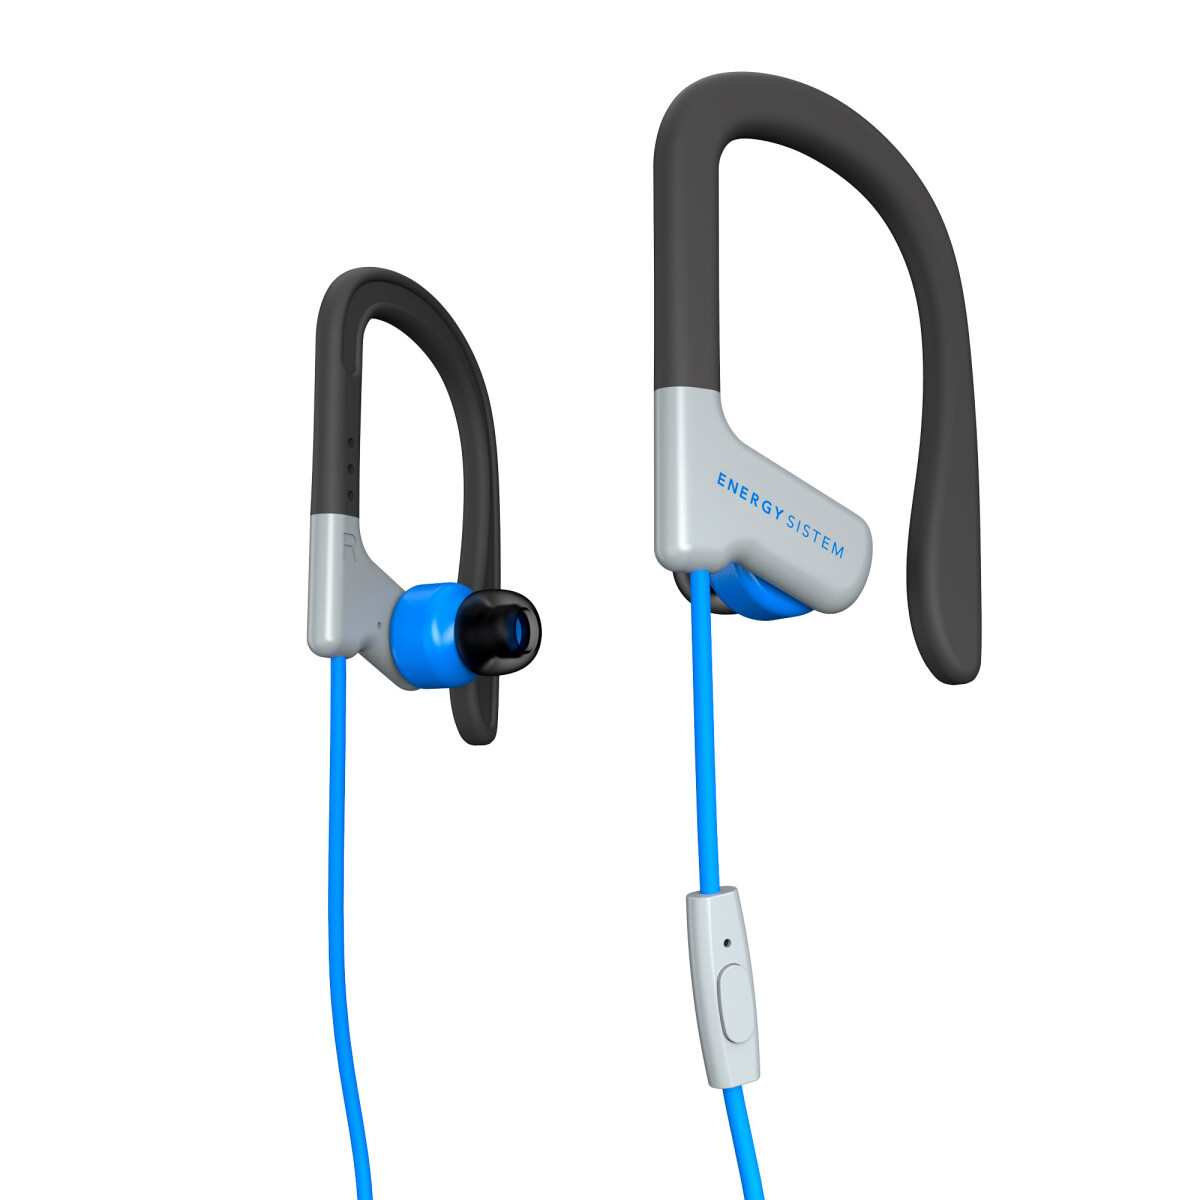 Energy sistem 429332 earphones sport 1 azul - 1997 